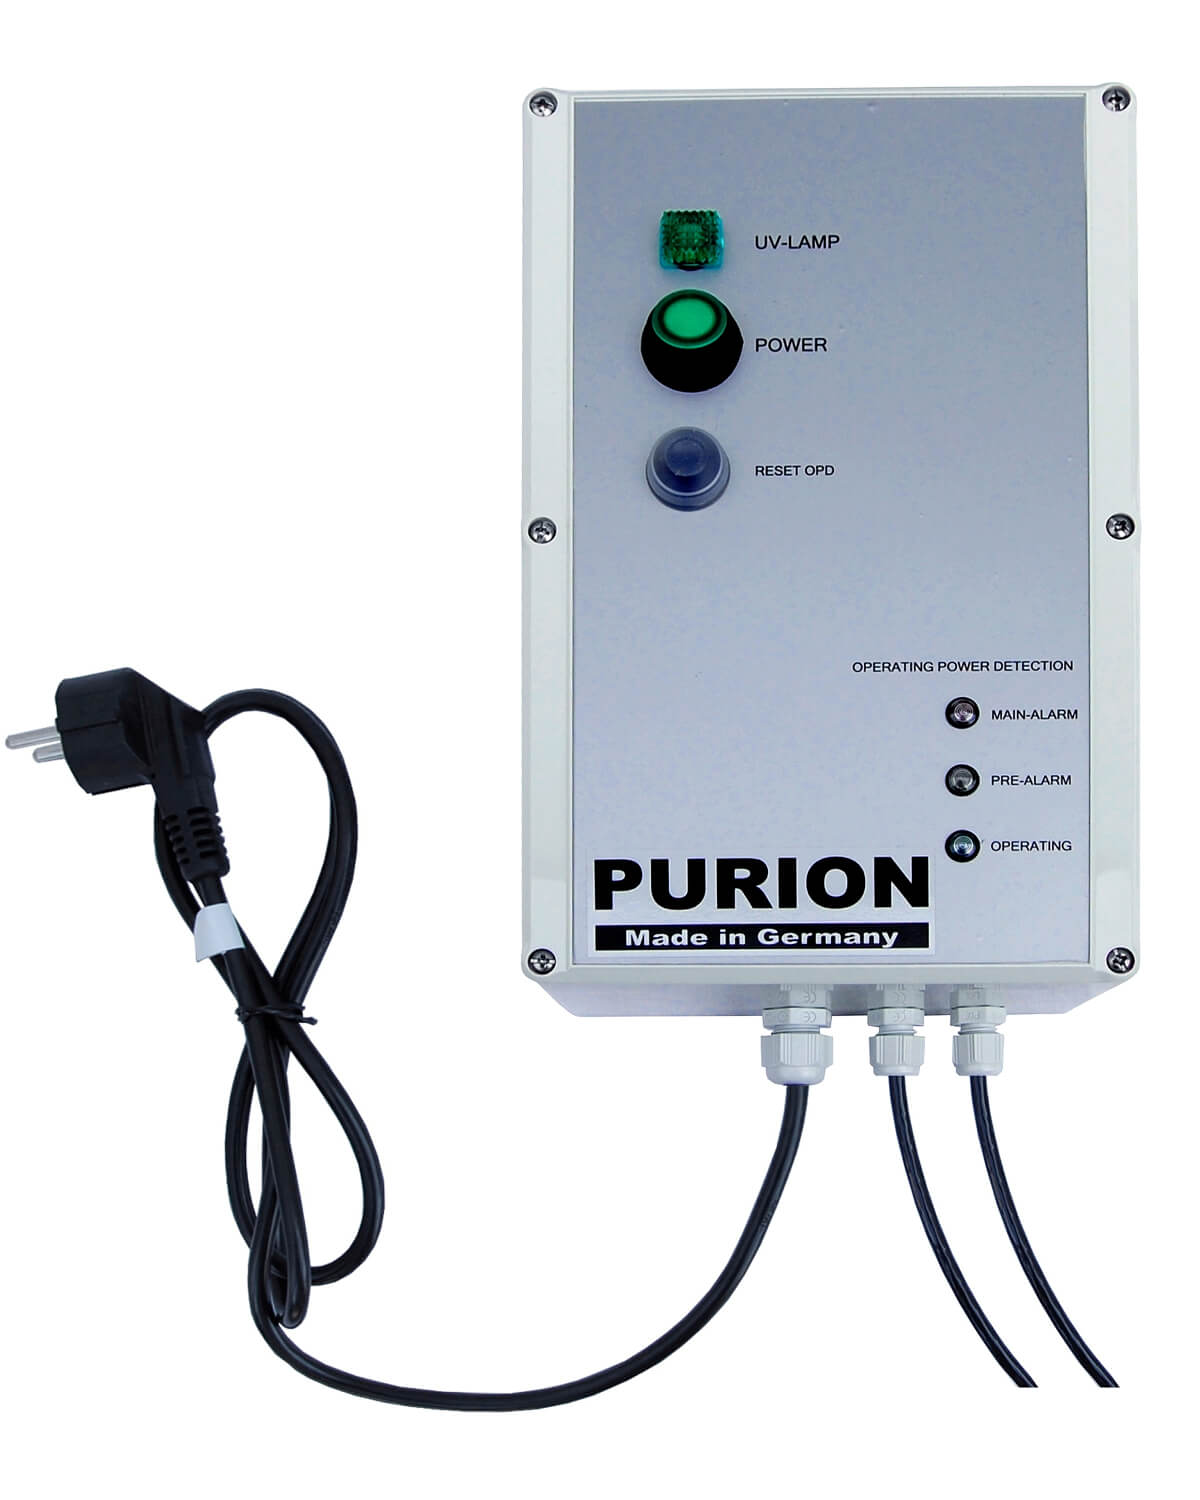 Die PURION GmbH ist auf UV-C-Desinfektion spezialisiert und bietet mit dem Produkt PURION 2500 H ESM innovative Lösungen zur Legionellenprävention bei gleichzeitiger Minimierung der Energiekosten.